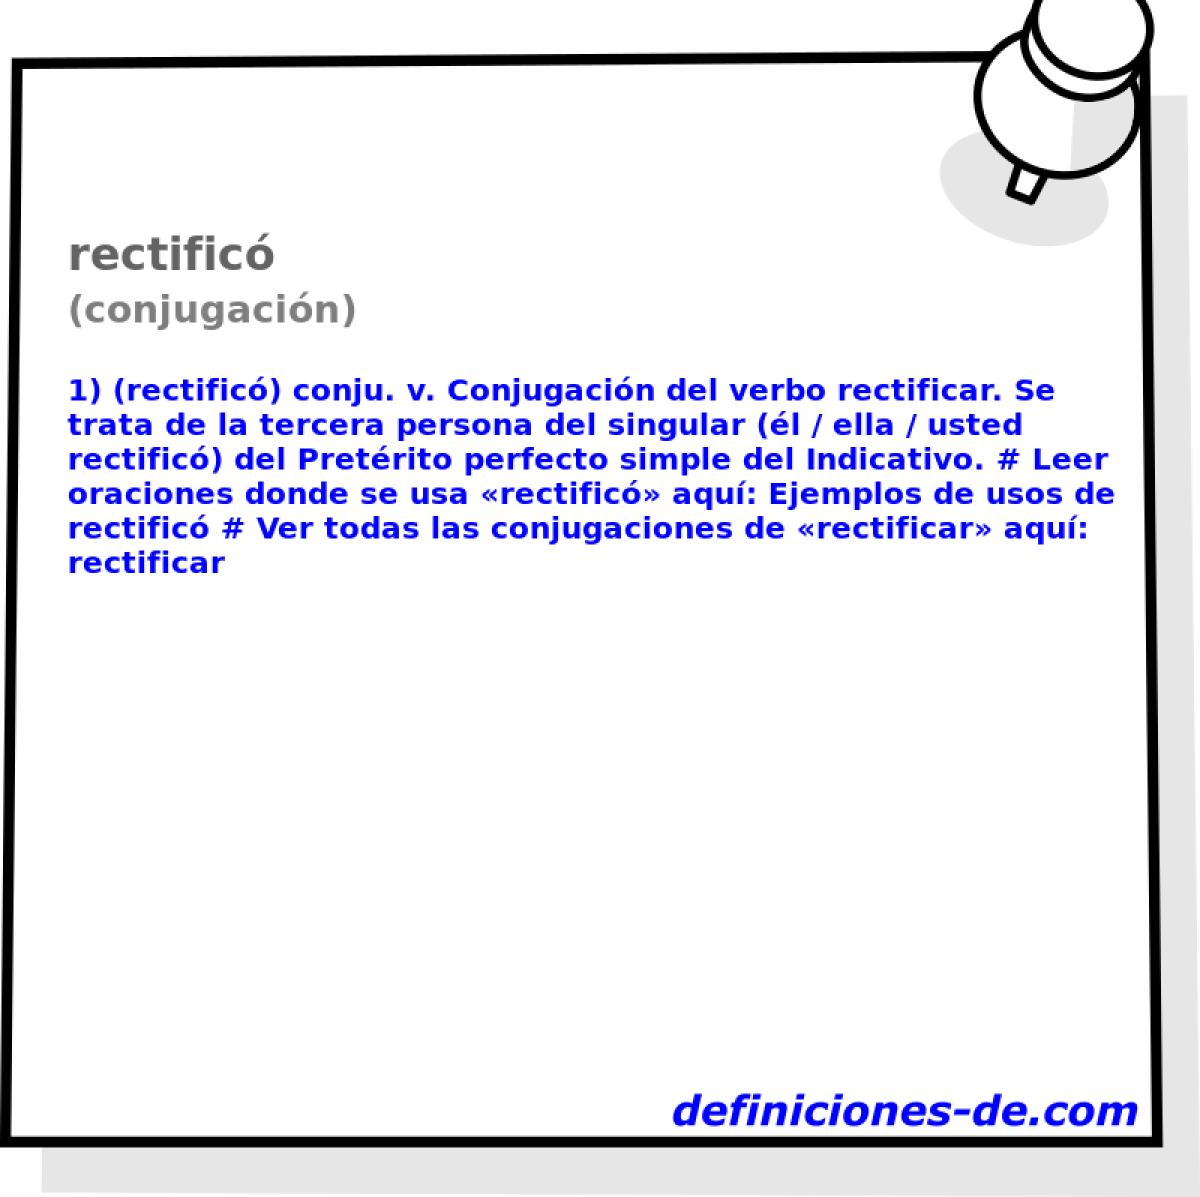 rectific (conjugacin)